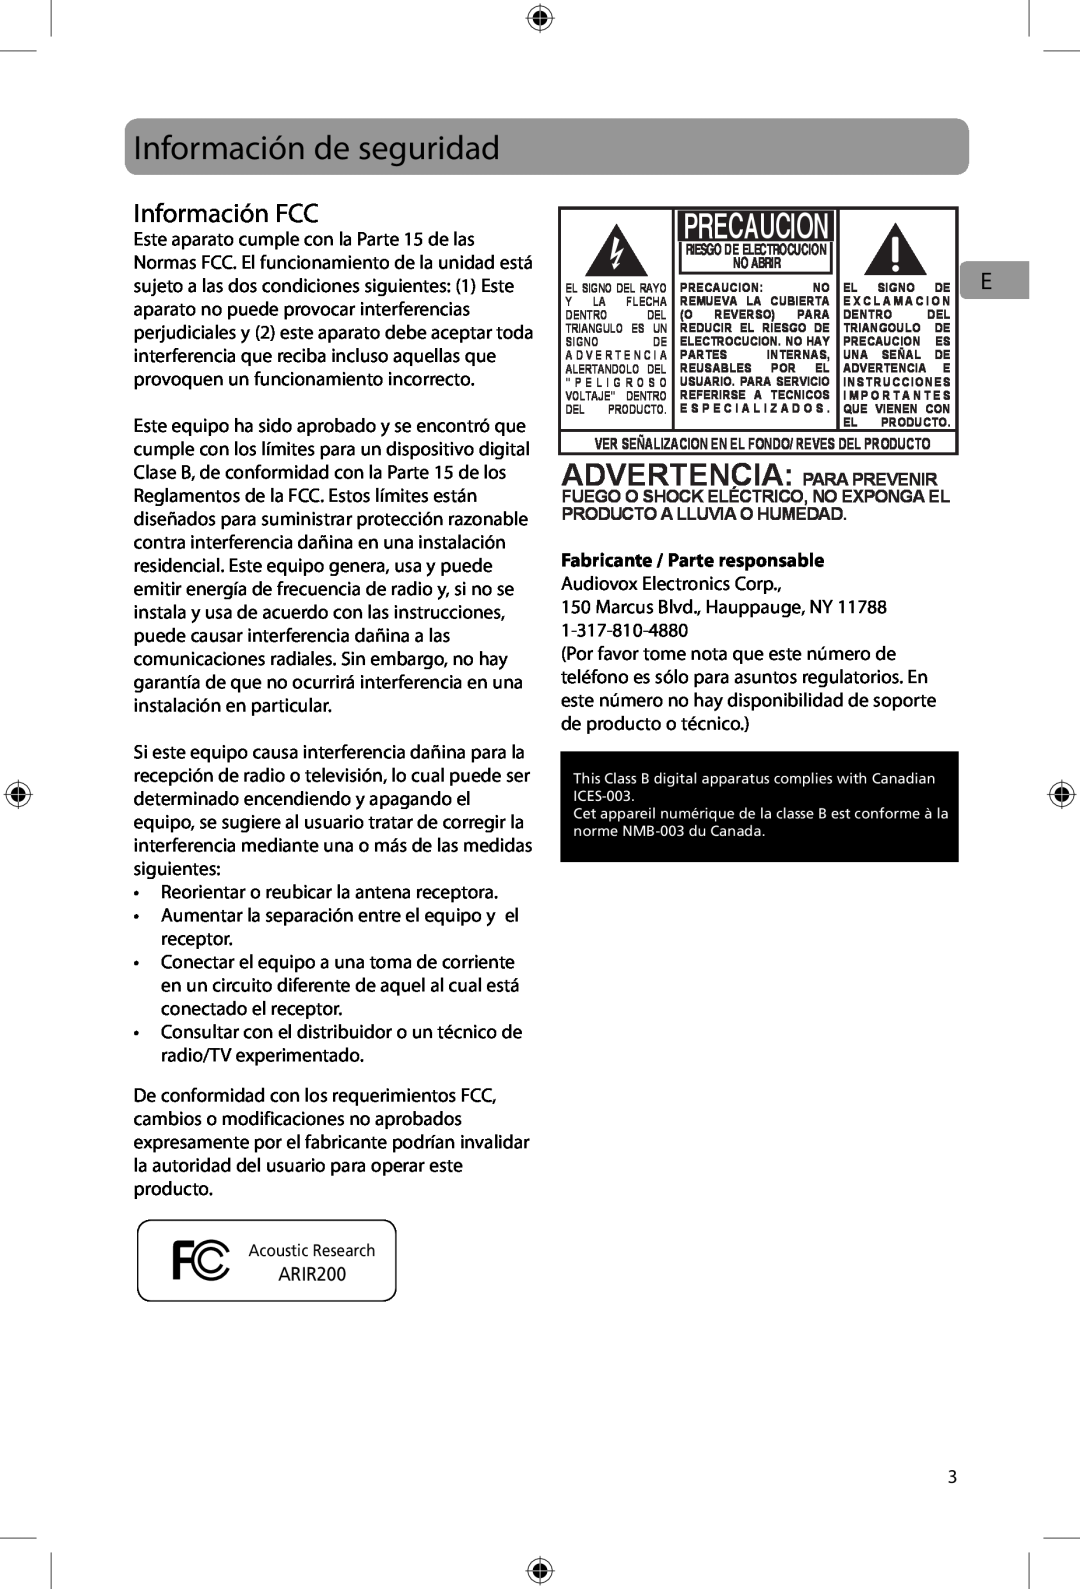 Acoustic Research ARIR200 user manual Información de seguridad, Información FCC, Advertencia: Para Prevenir, Precaucion 